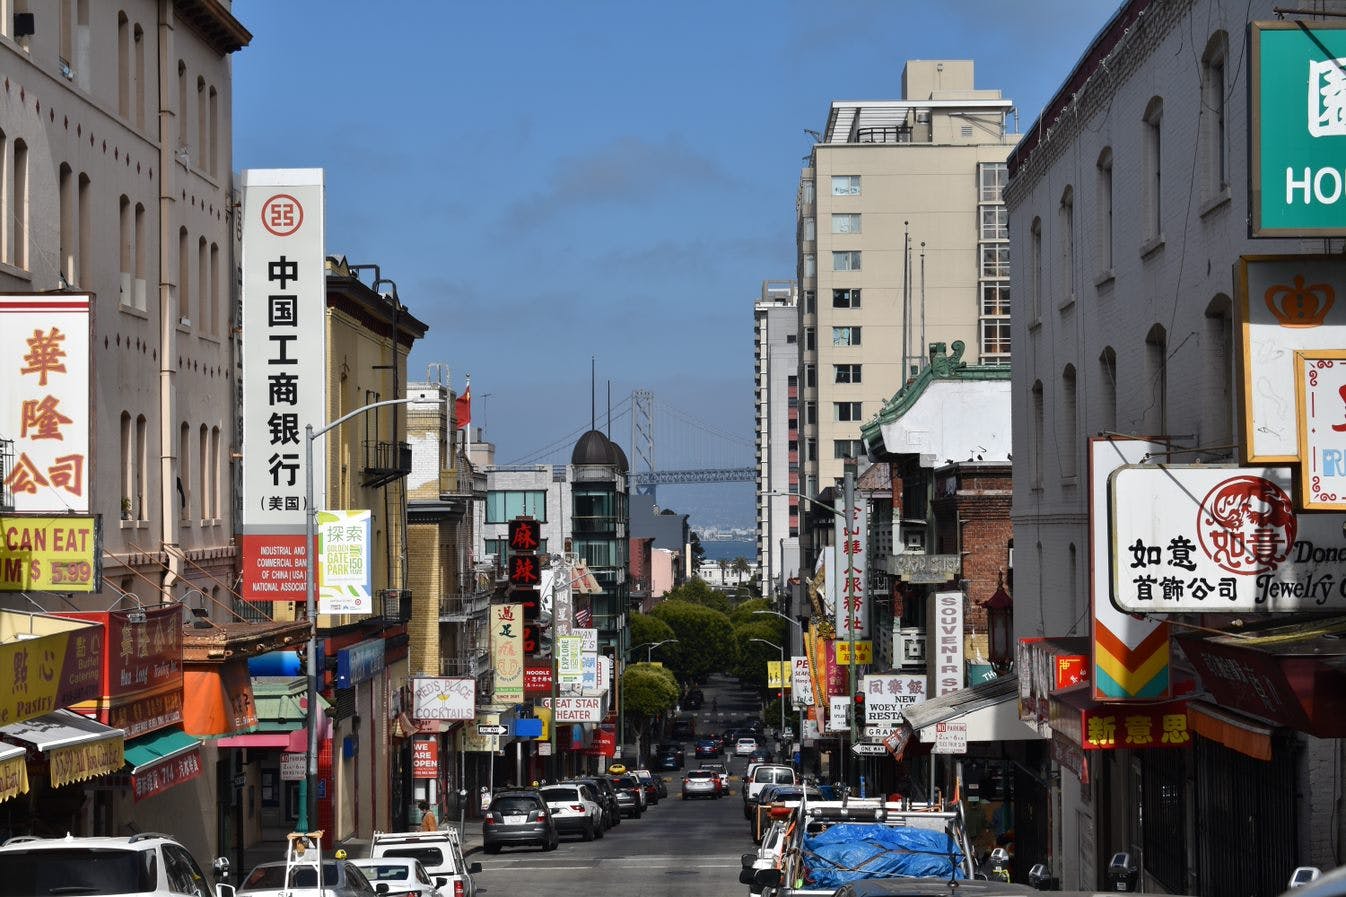 Wandeltocht over eten en geschiedenis in Chinatown in San Francisco